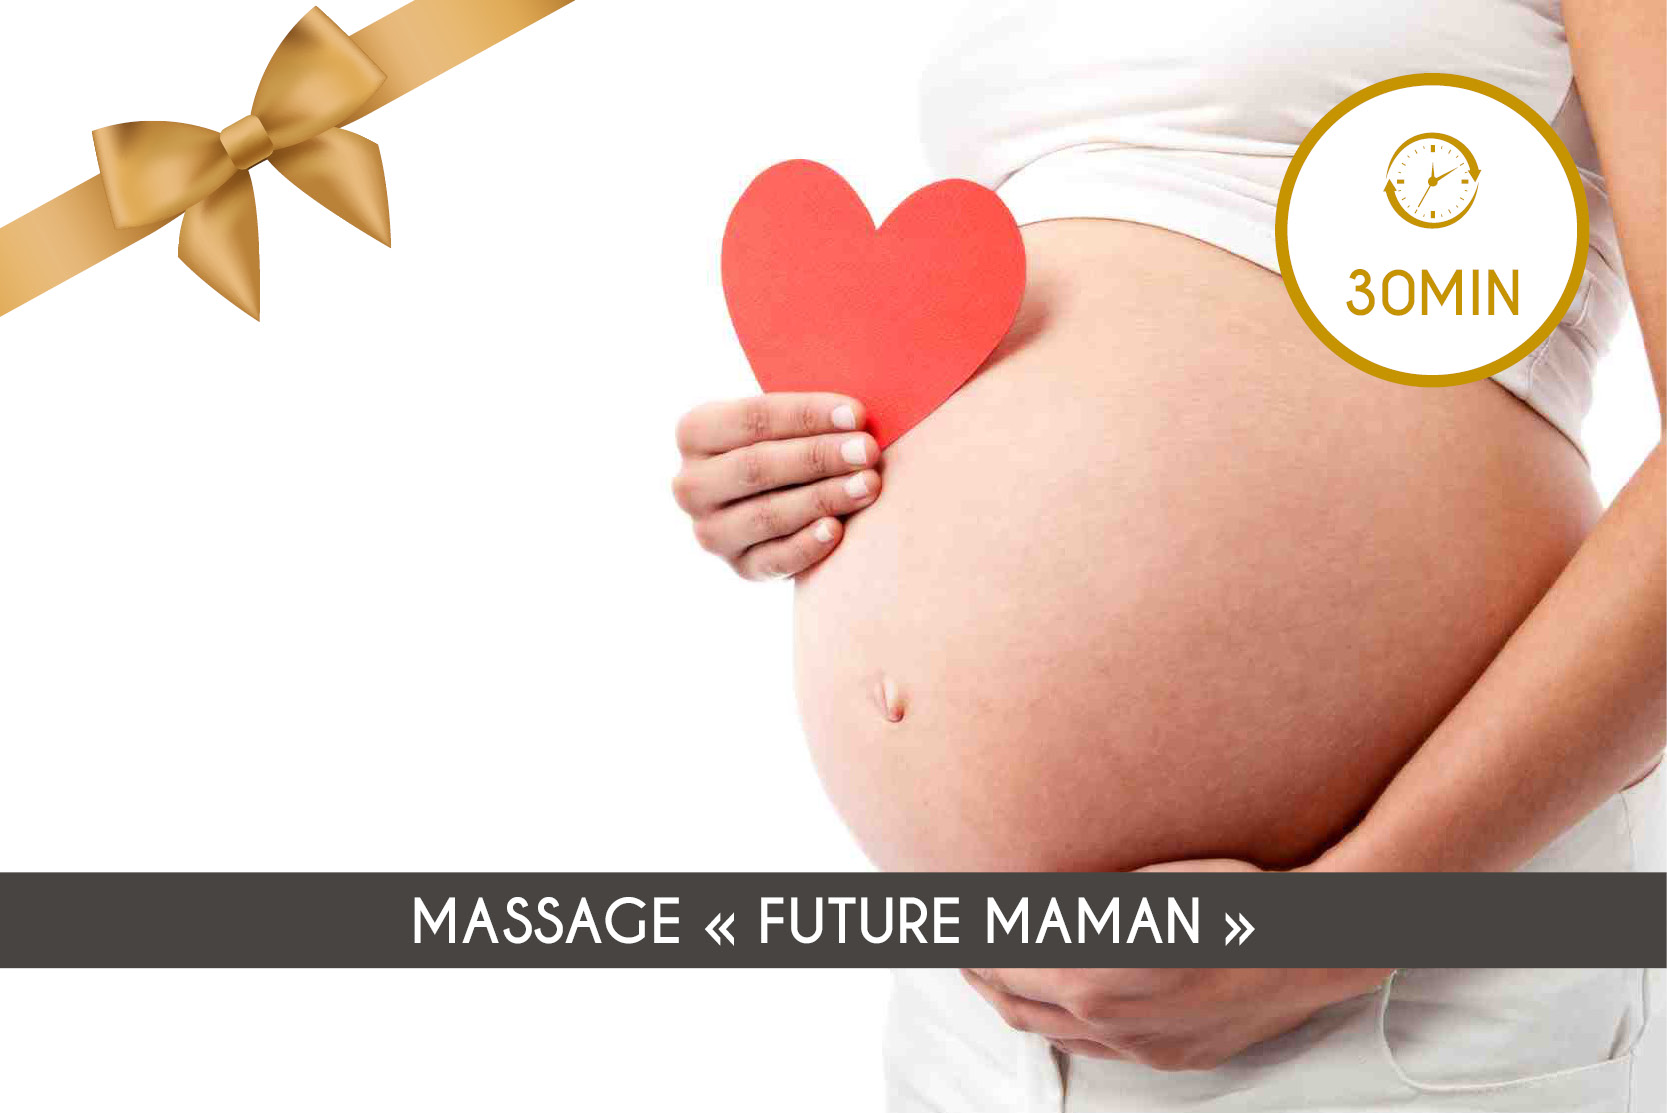 Massage "Future Maman" (30min)